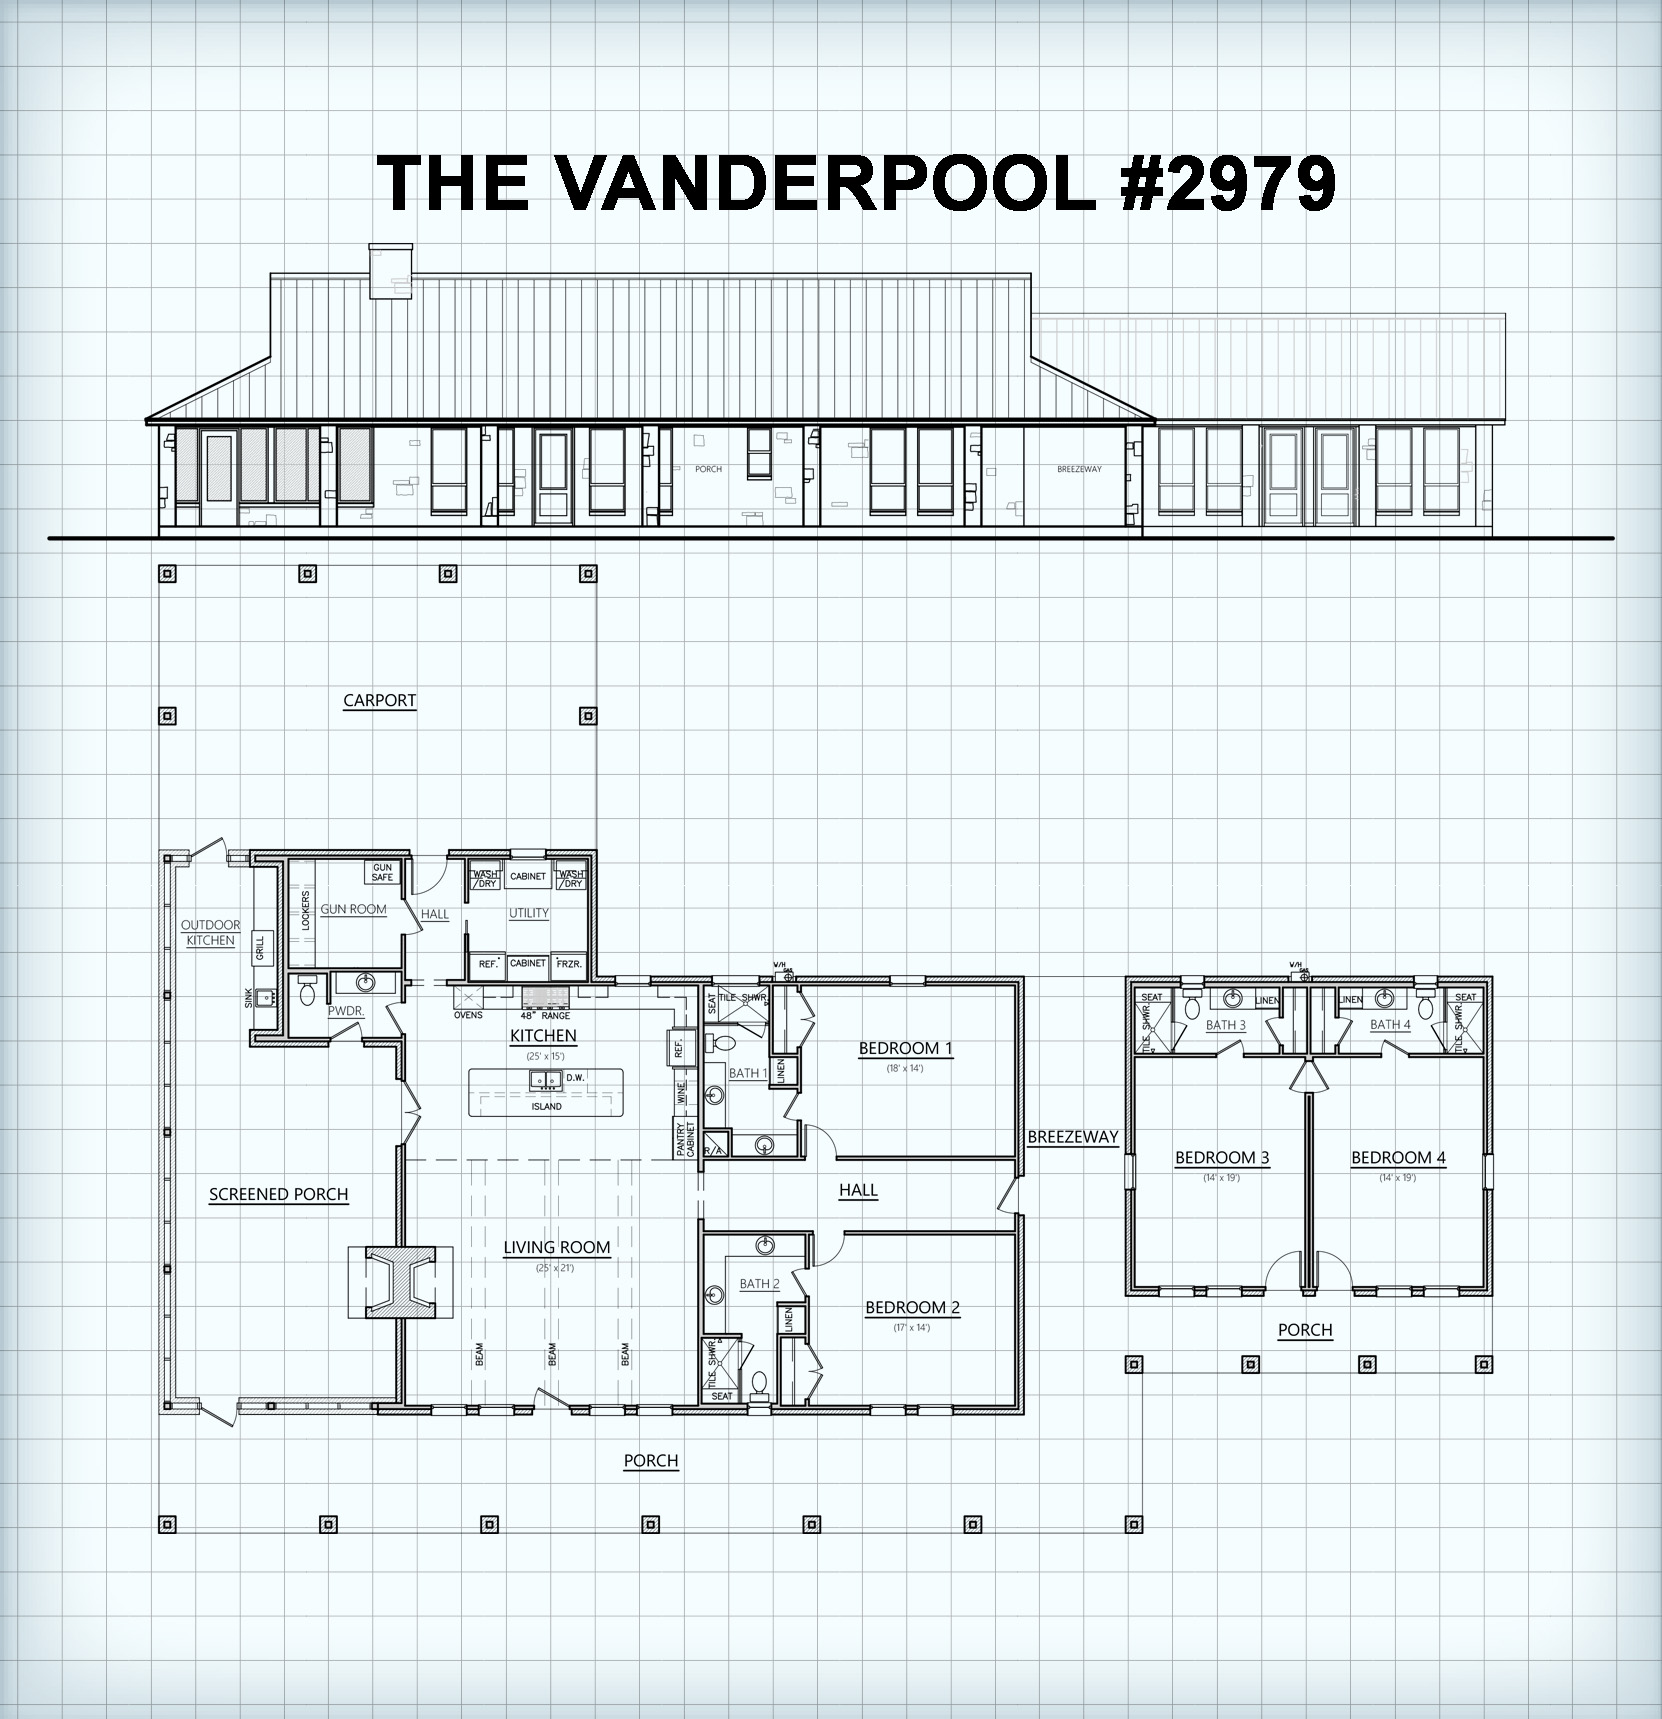 The Vanderpool 2979